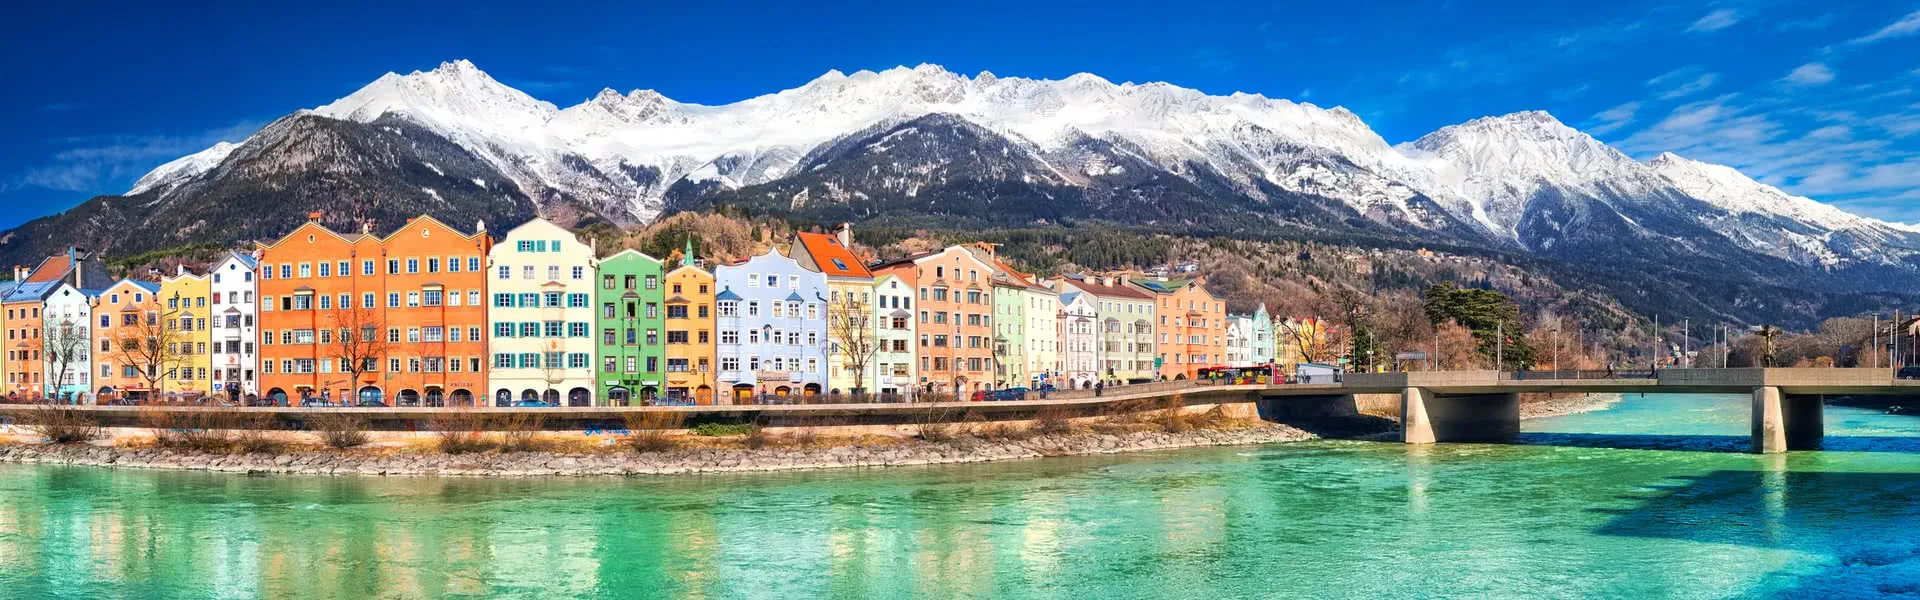 Innsbruck - das Reiseziel für Geschäftsreisen